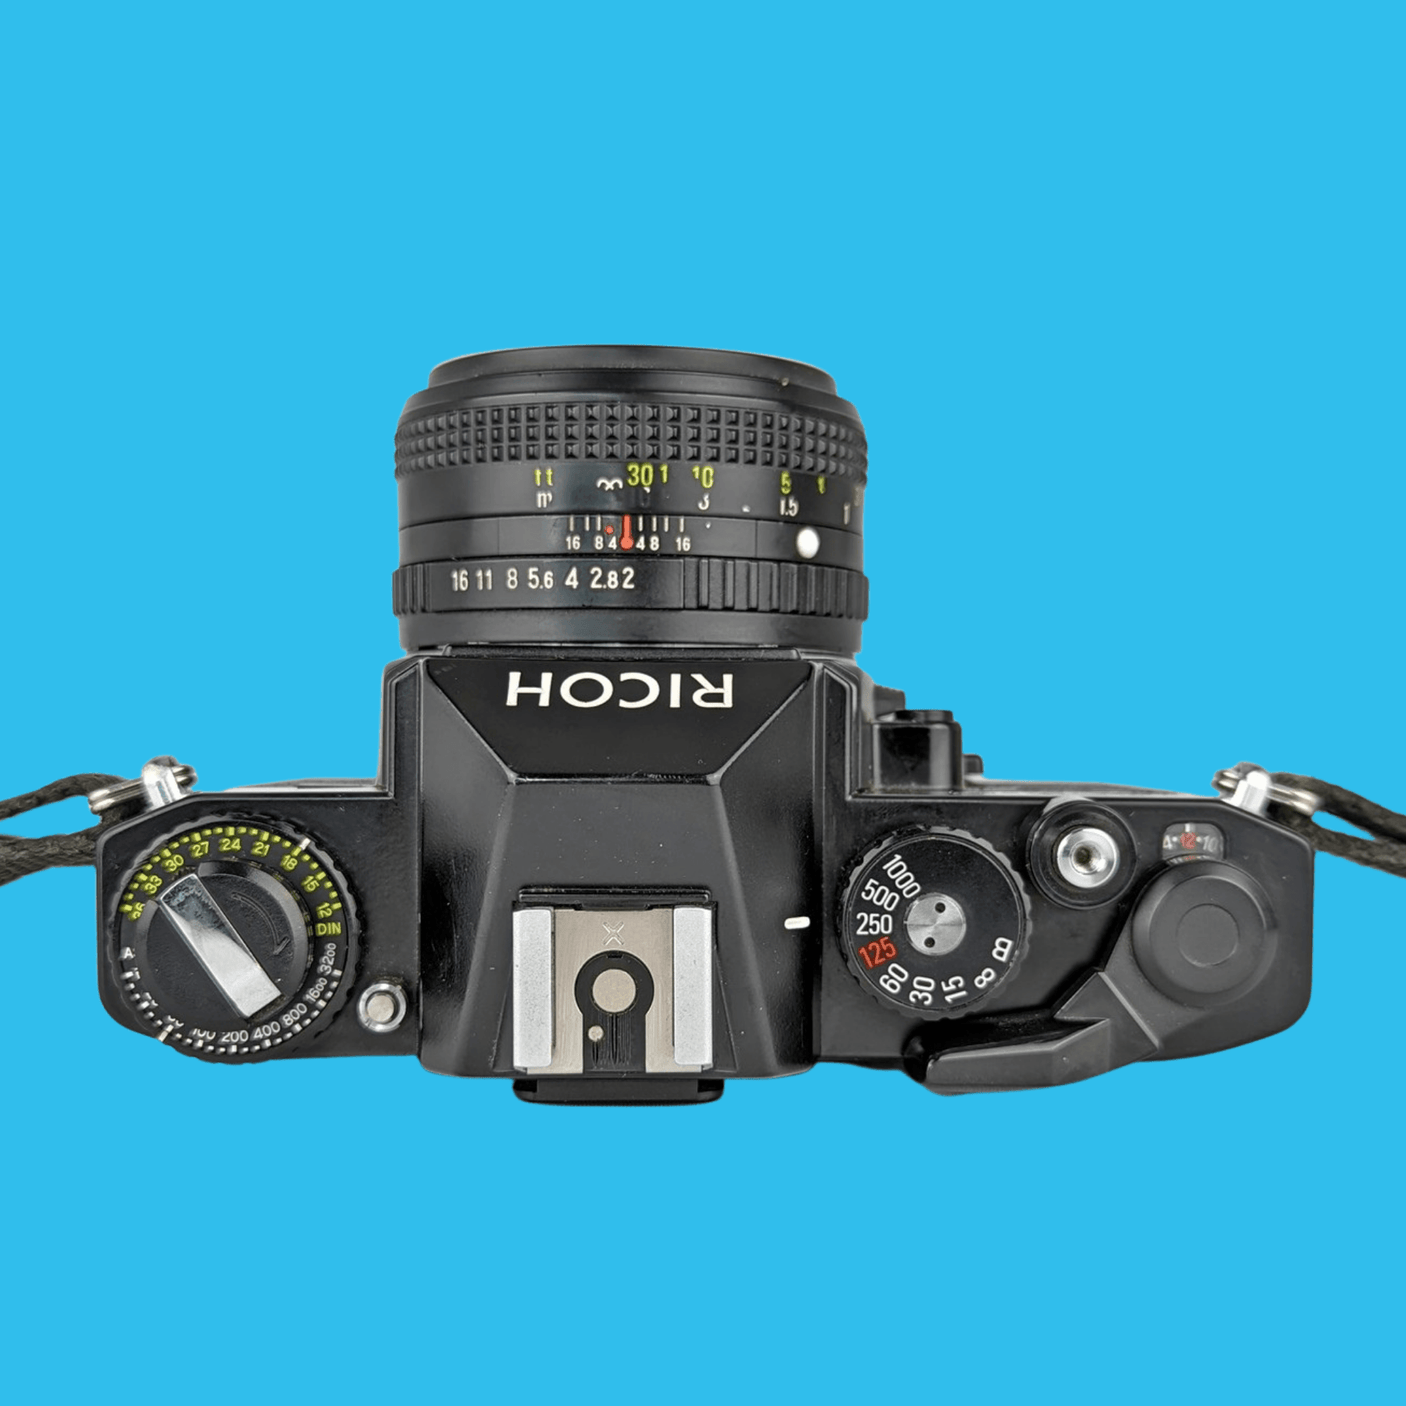 Ricoh KR-5 Super Vintage SLR 35mm Film Camera with 50mm Prime Lens